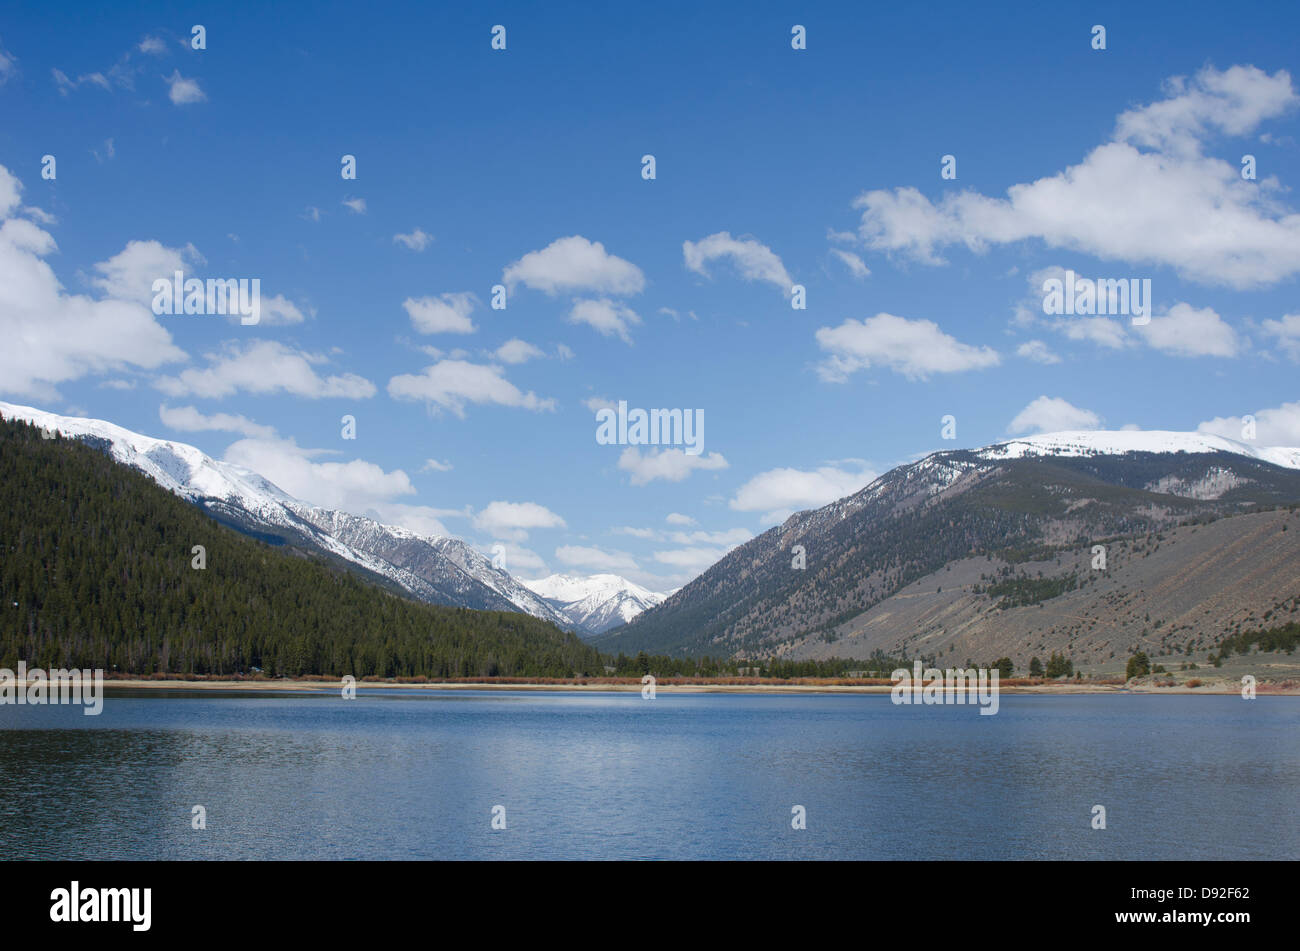 Frühling in den Rocky Mountains ist ein Schaufenster der sowohl im Sommer als auch im Winter mit Schnee auf den Berggipfeln und Süßwasserseen. Stockfoto